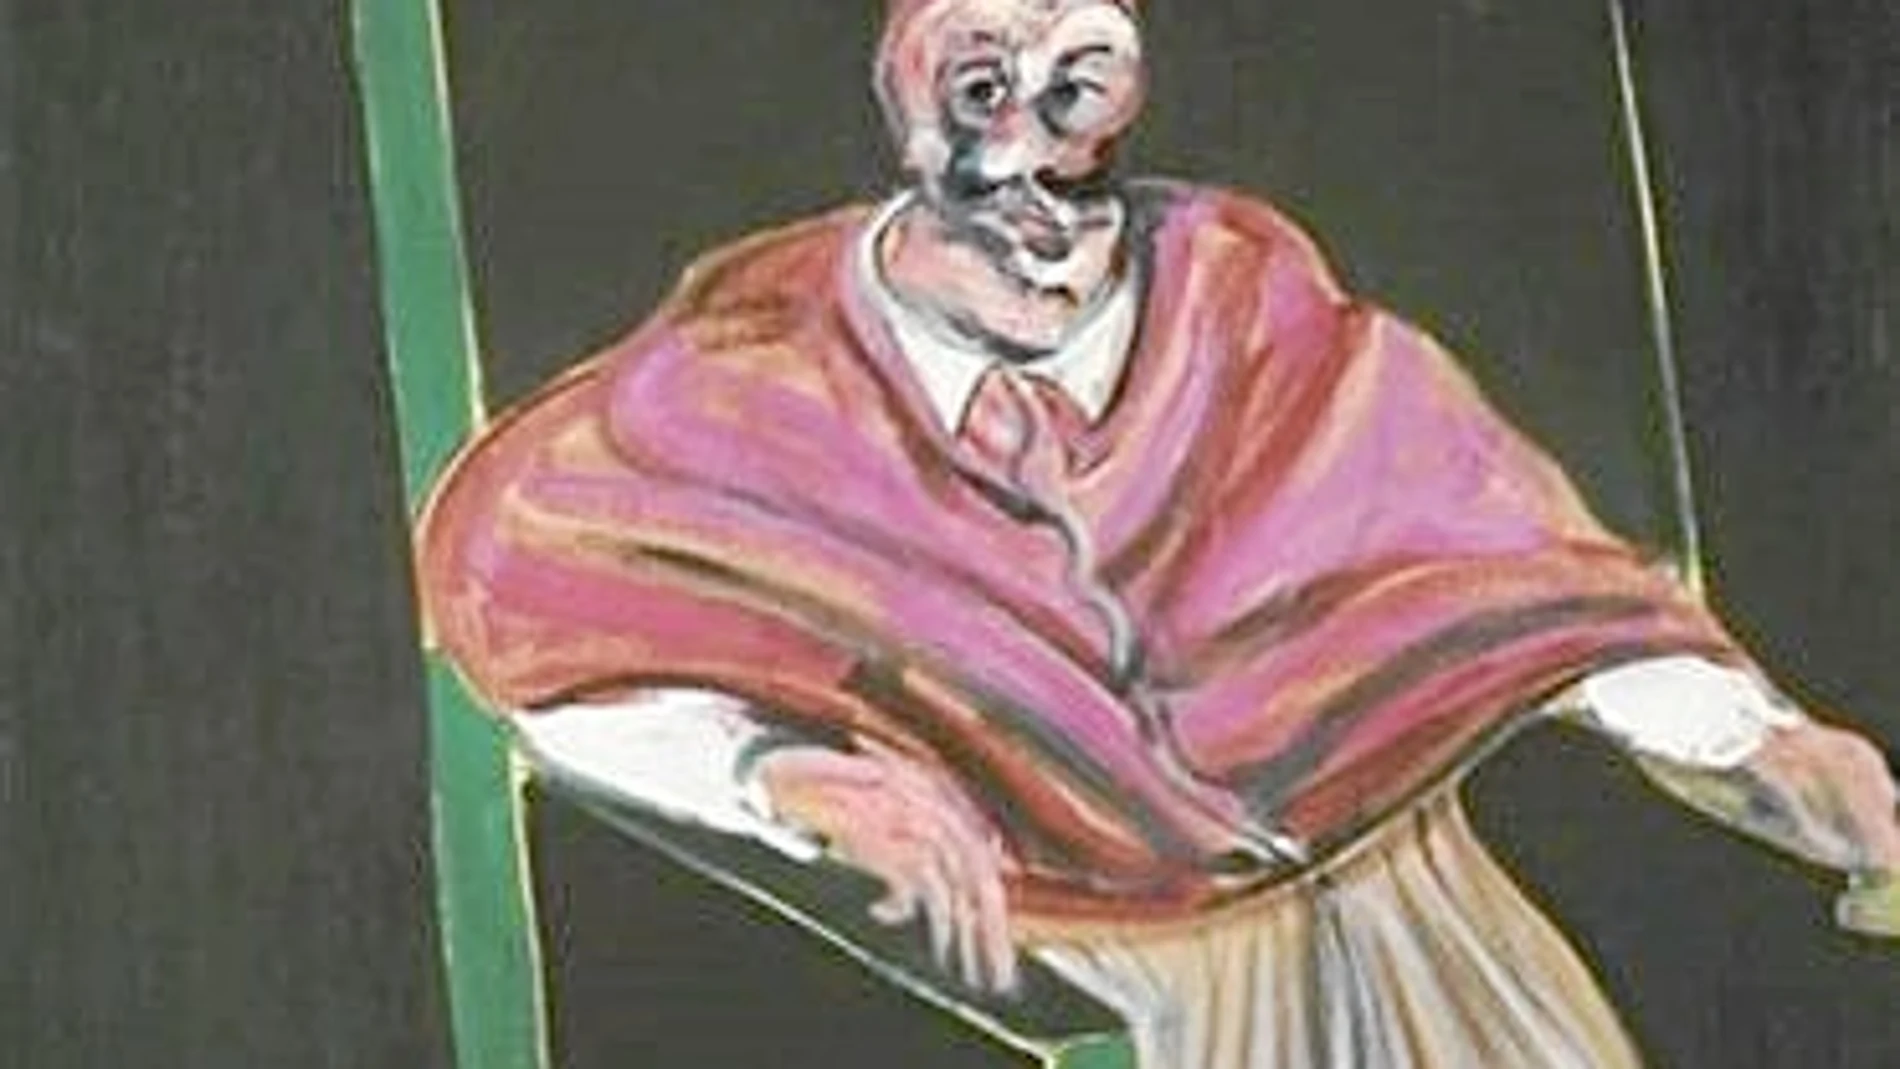 «Estudio de Papa I», de 1961, era la pieza más cara ayer en Sotheby’s, con un precio de salida de entre 25 y 35 millones de libras. Esta obra de la serie inspirada en Velázquez se quedó sin comprador